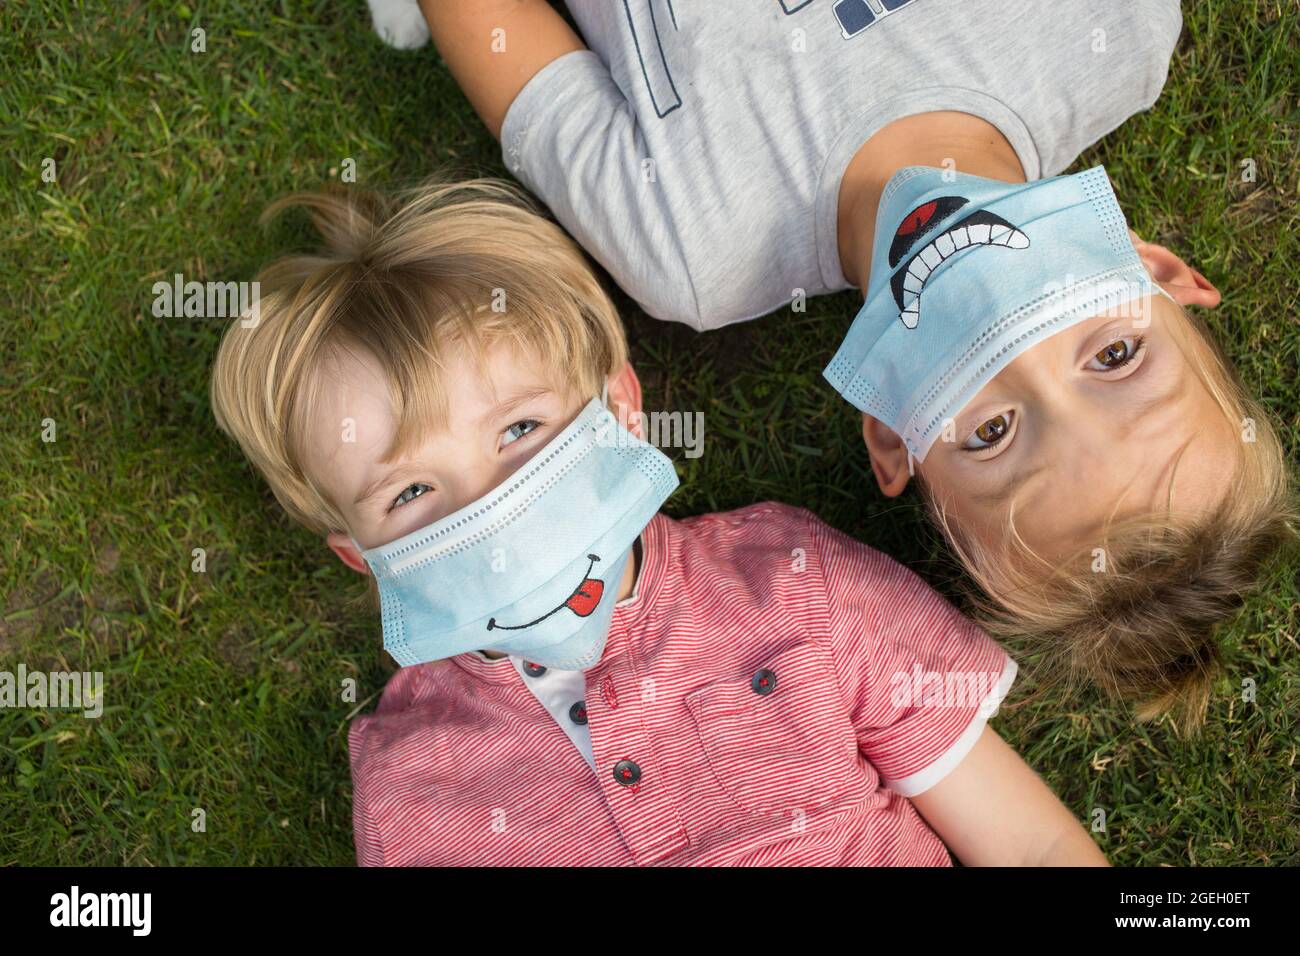 Porträt von zwei Jungen 5-6 Jahre alt in medizinischen Schutzmasken mit lustigen Lächeln gezeichnet. Liegen auf dem Rücken auf dem Rasen, Blick nach oben. Kommunikation zwischen Kind Stockfoto